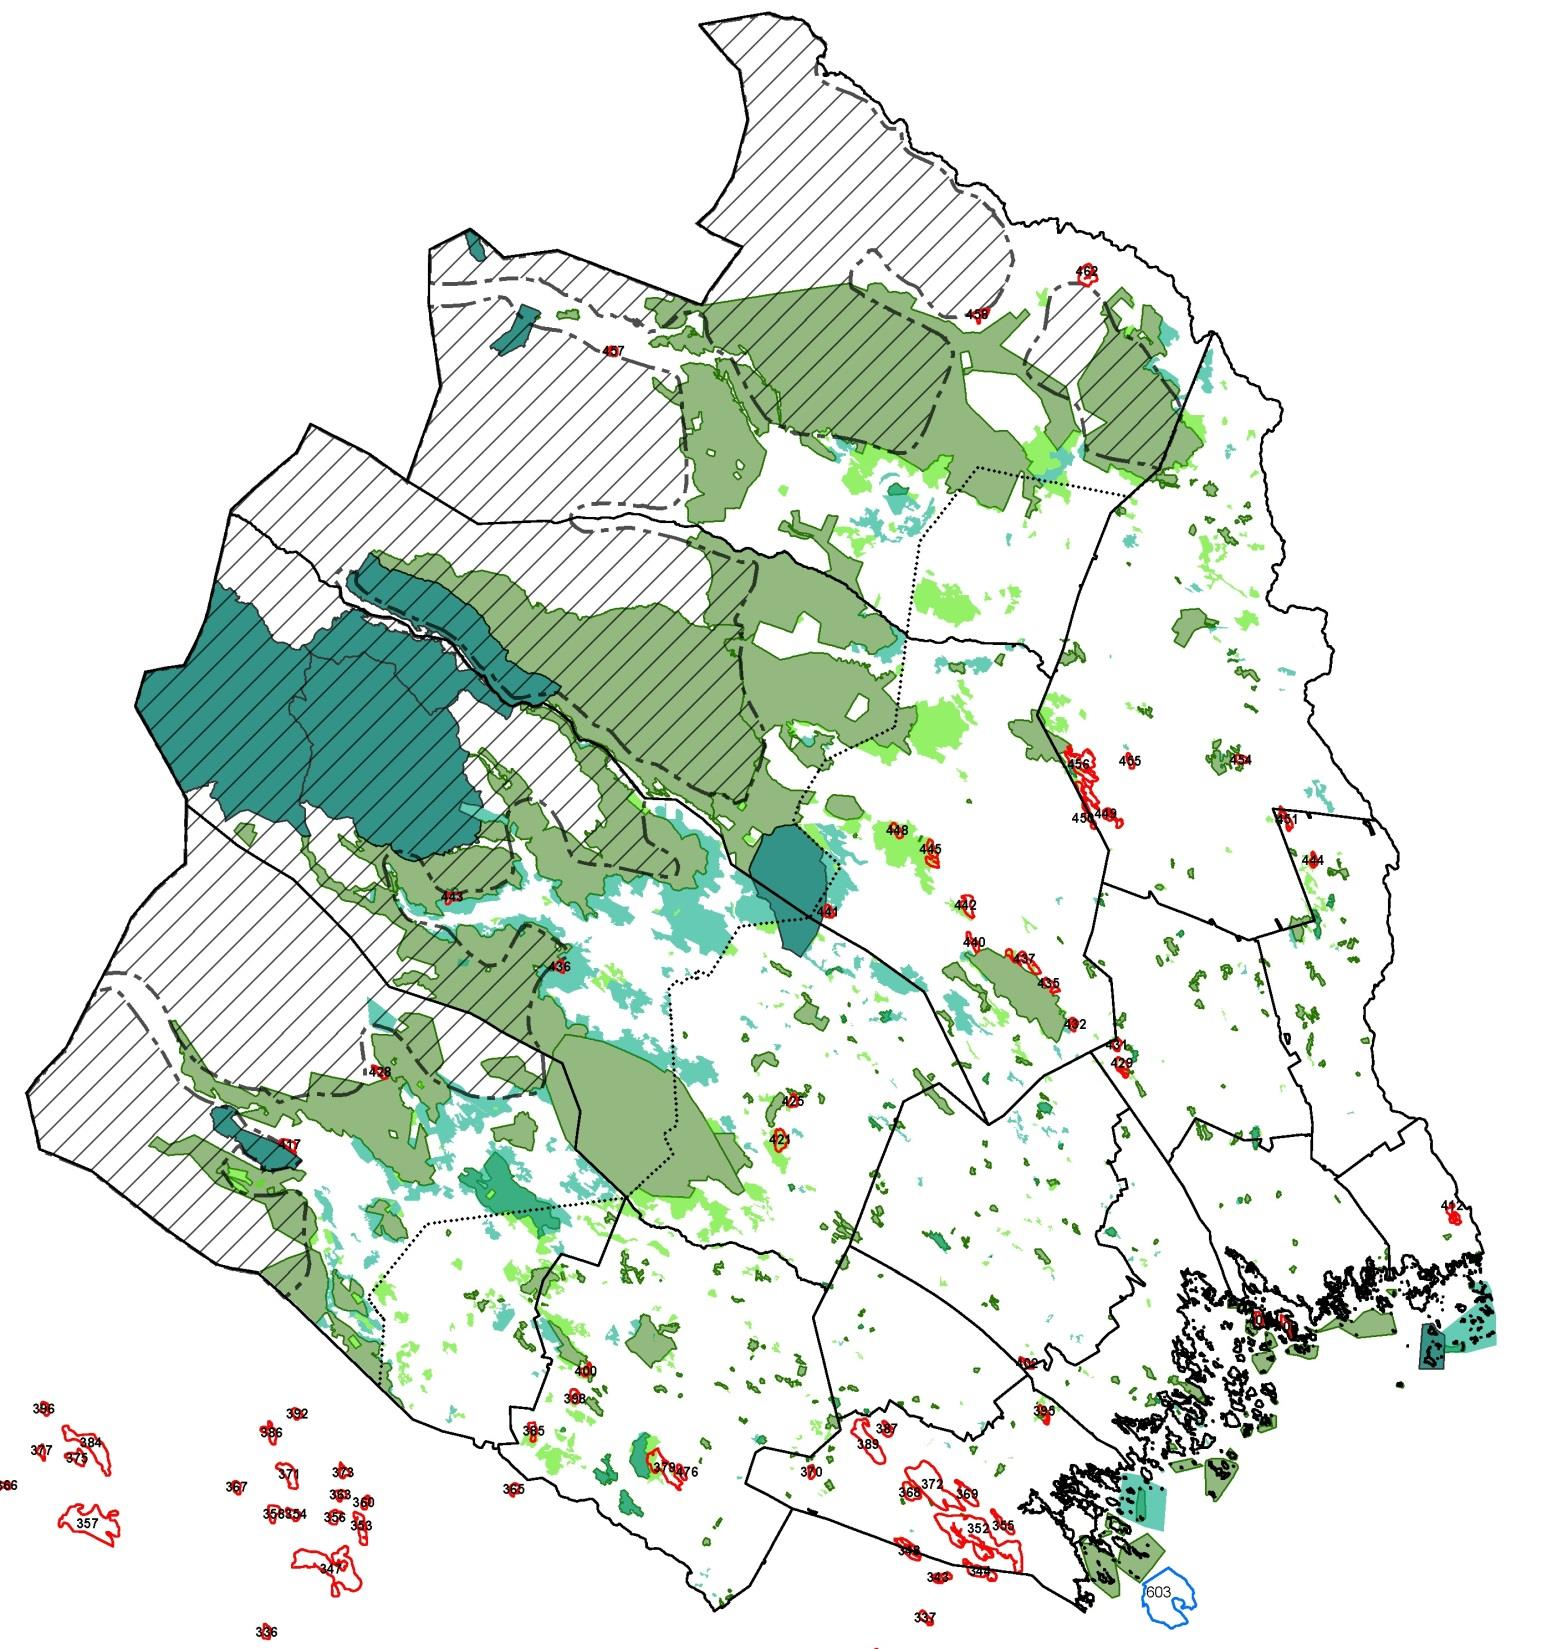 Gröna/grönblå områden = NR resp. NP. Ljusare blågrön = planerade NR, ljusgröna = skogsområden med mycket höga naturvärden (i paritet med NR).